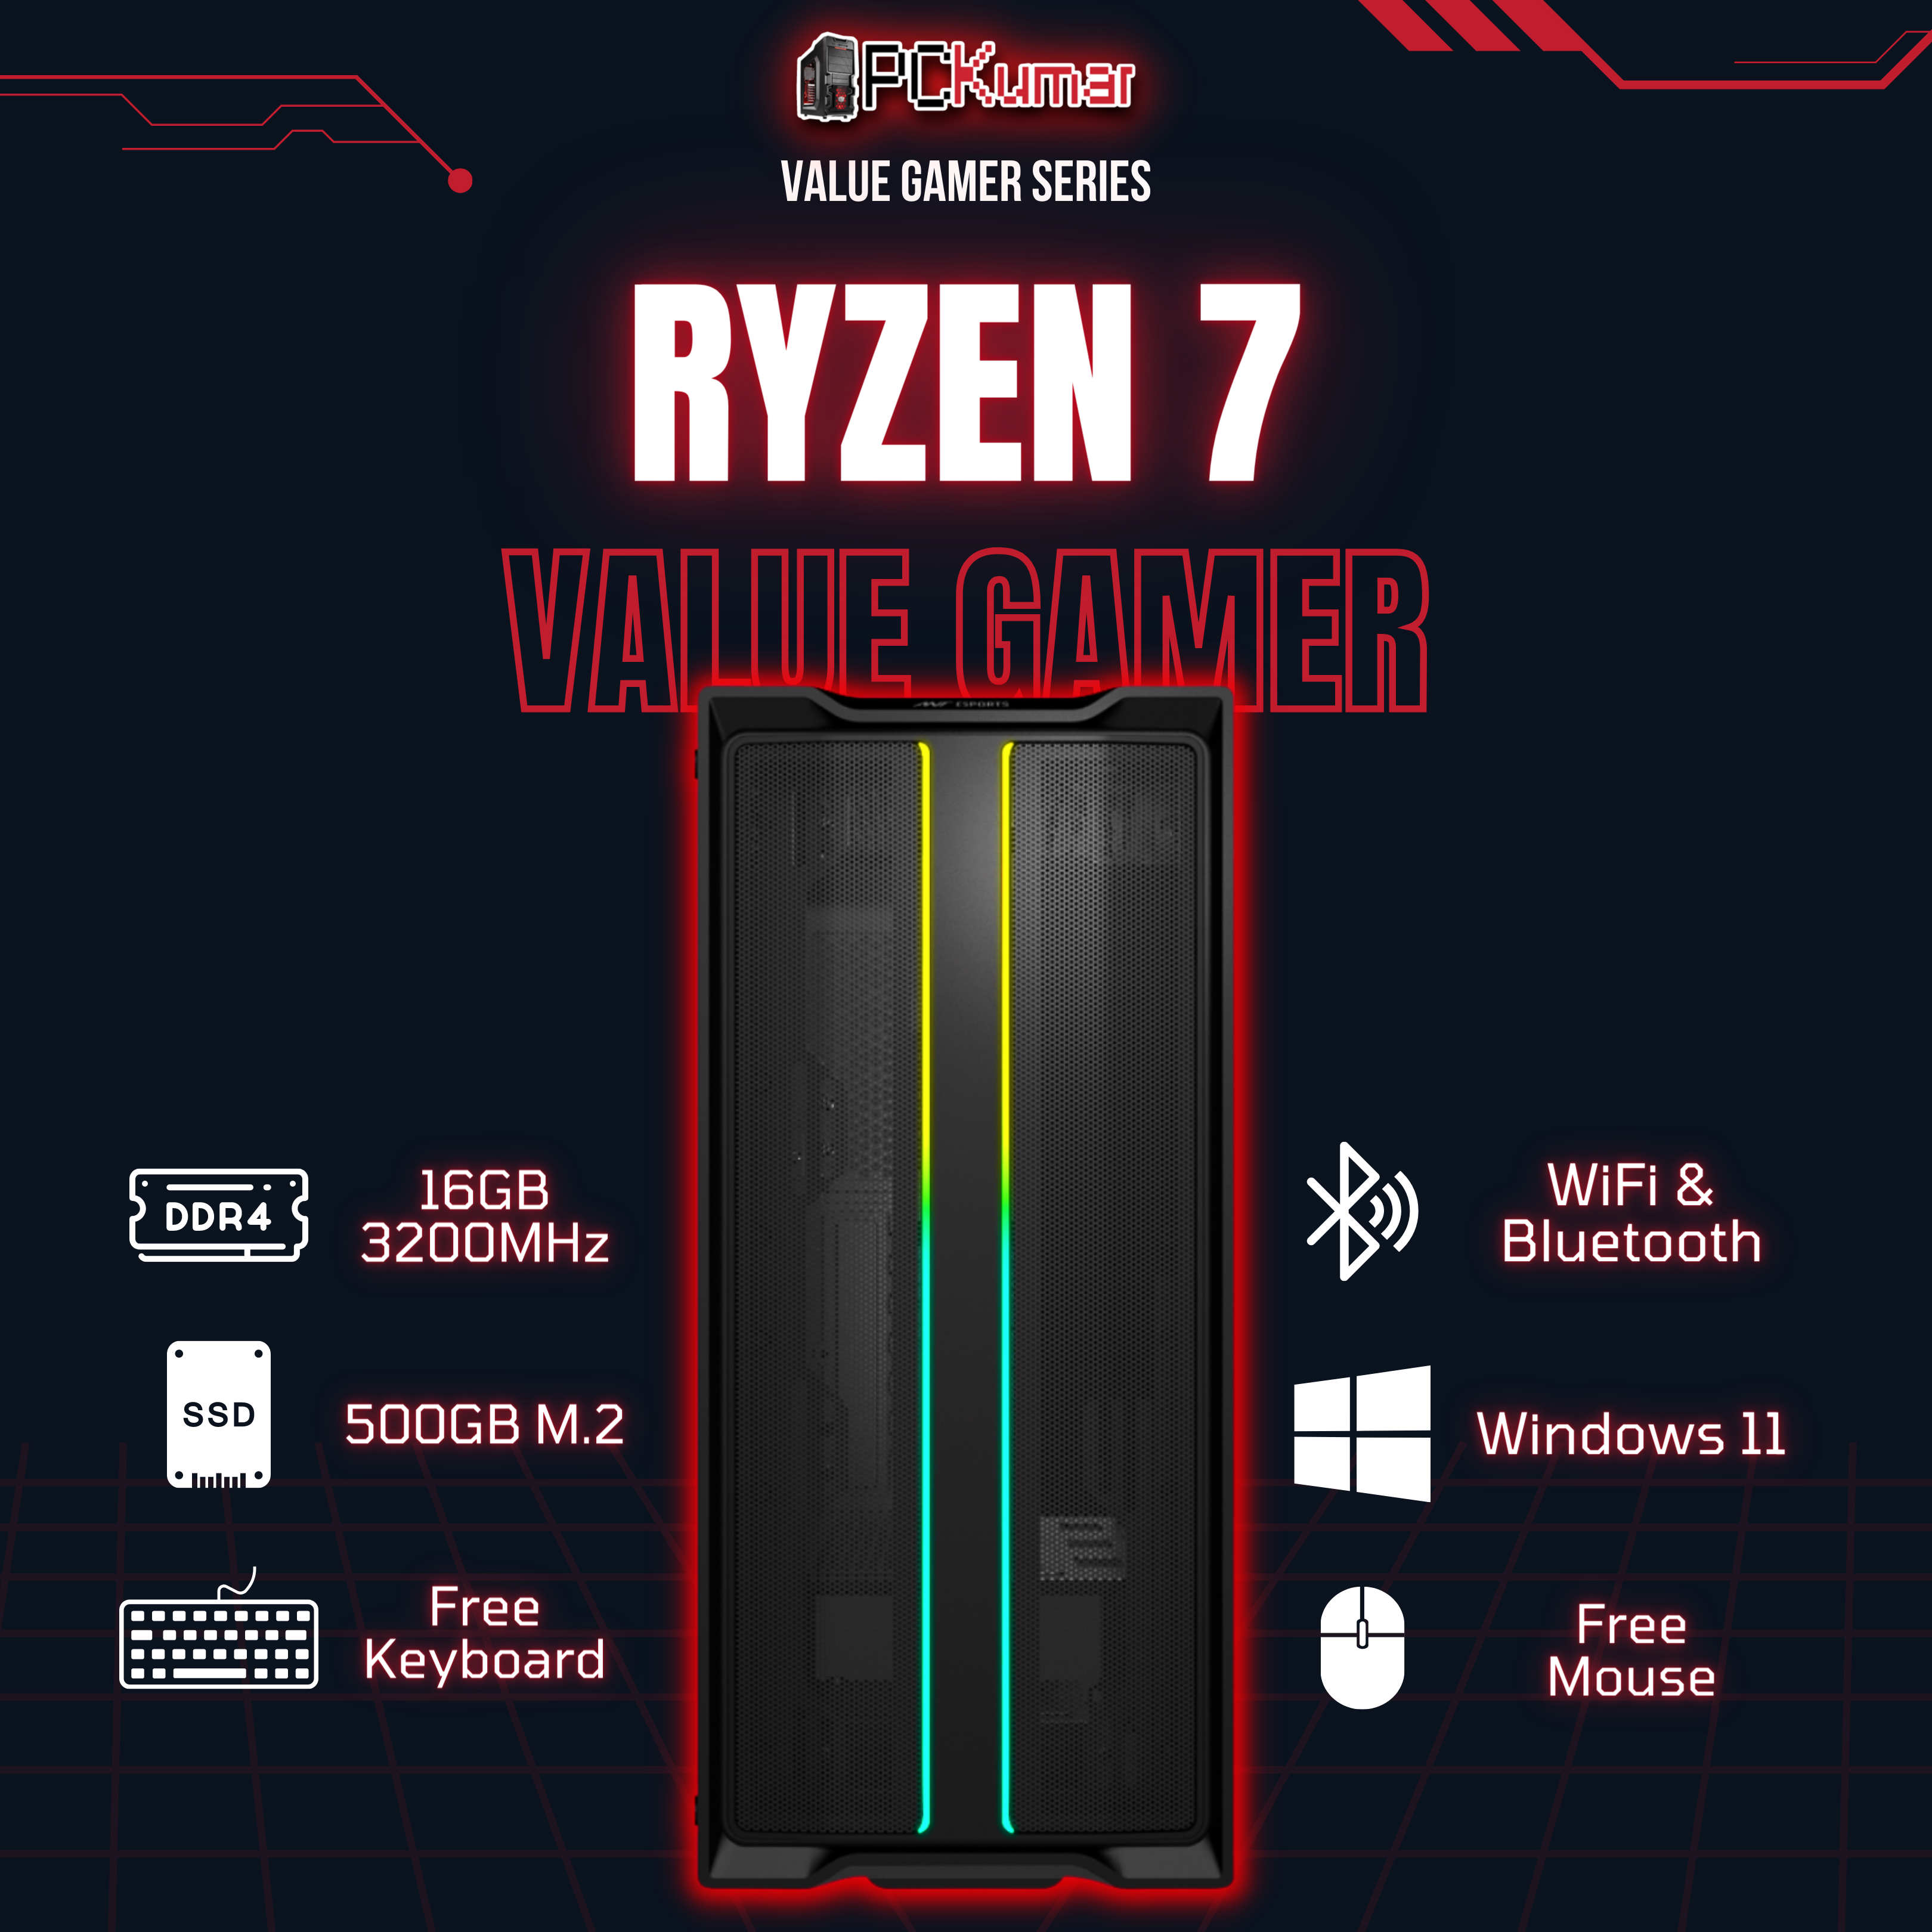 Value Gamer Ryzen 7